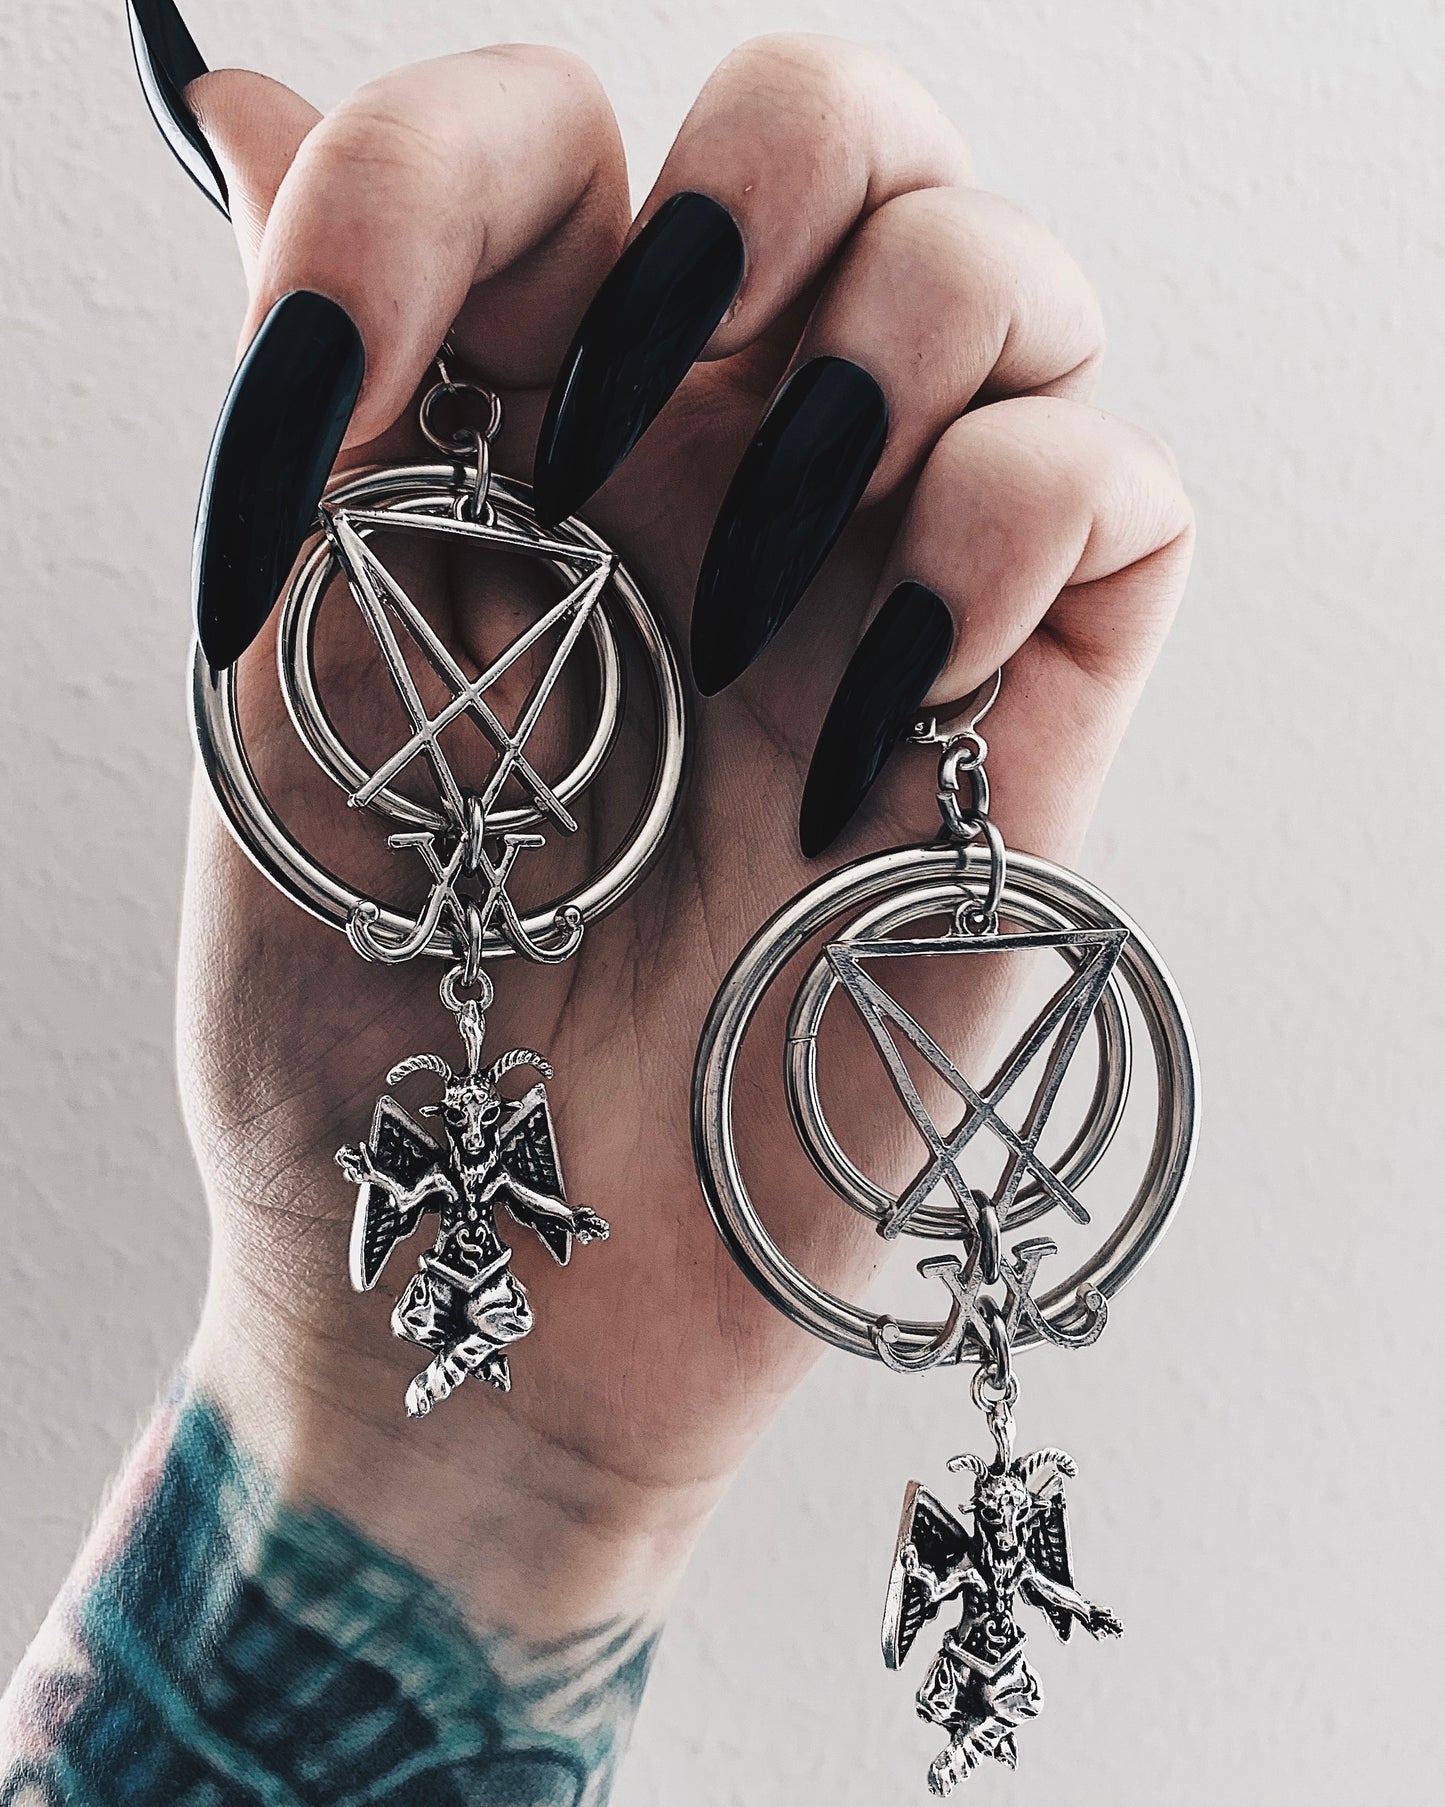 Satanic Royalty earrings